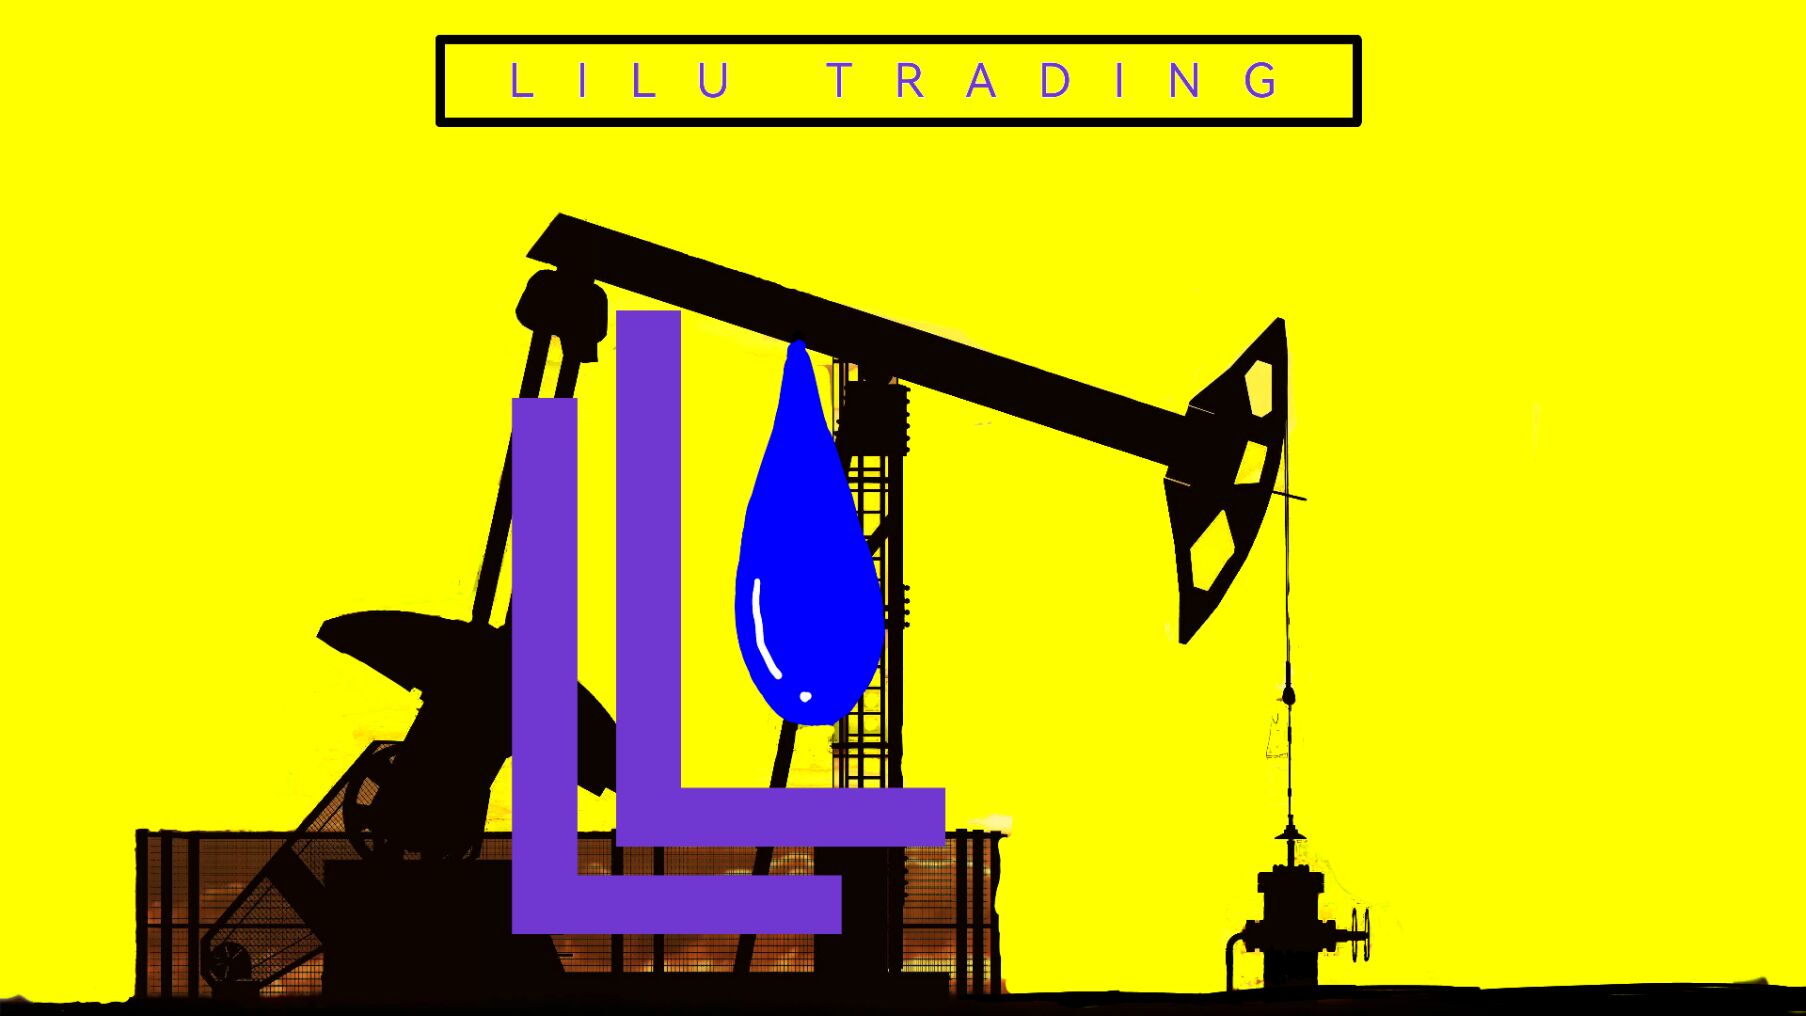 Xi 'an Lilu Trading Co., LTD